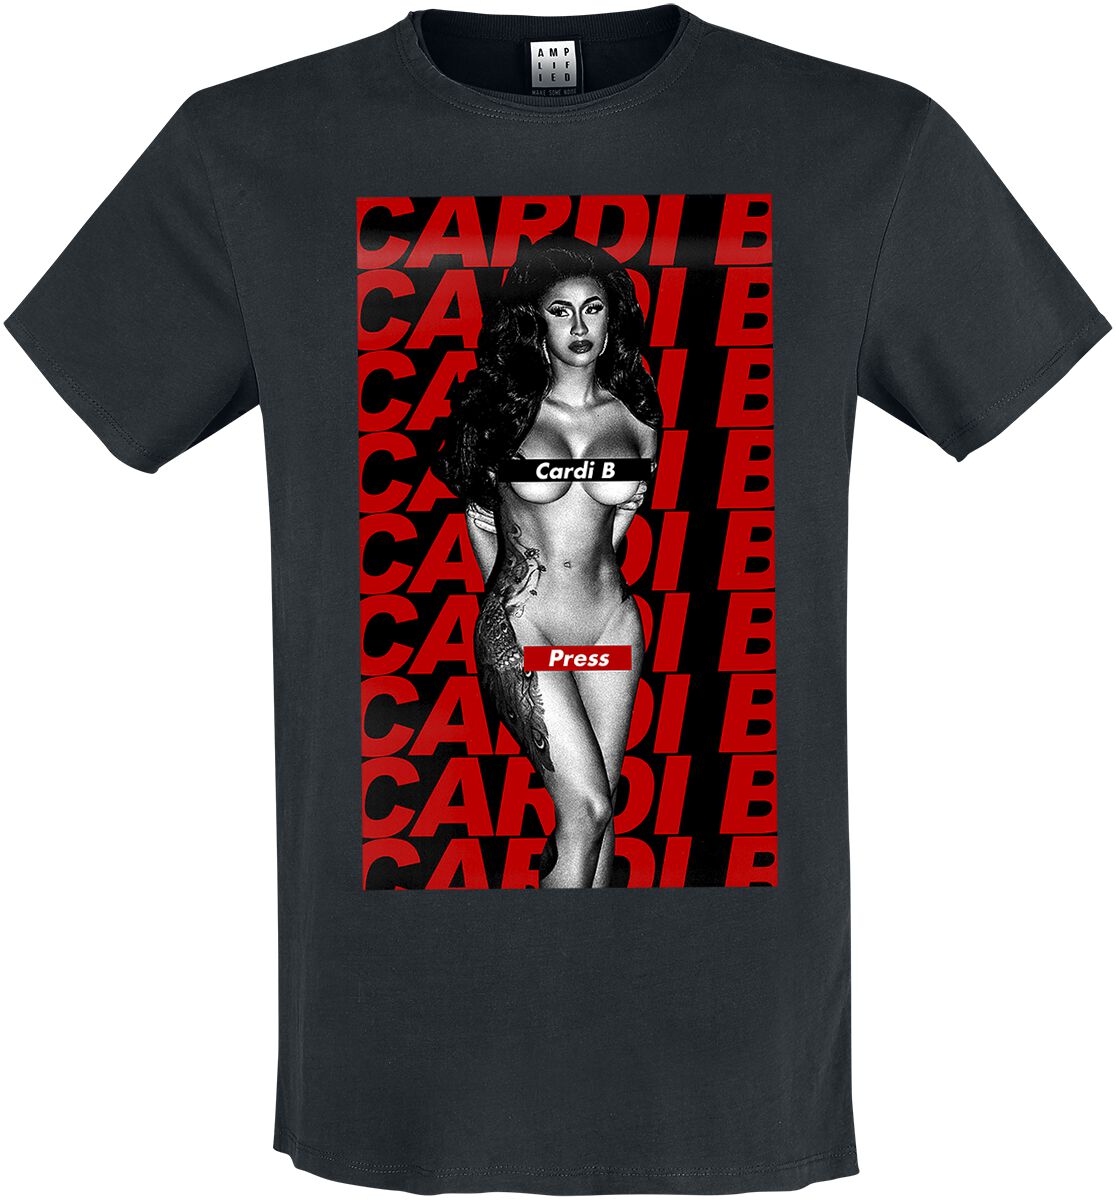 Cardi B T-Shirt - Amplified Collection - Press - S bis XXL - für Männer - Größe XL - schwarz  - Lizenziertes Merchandise!